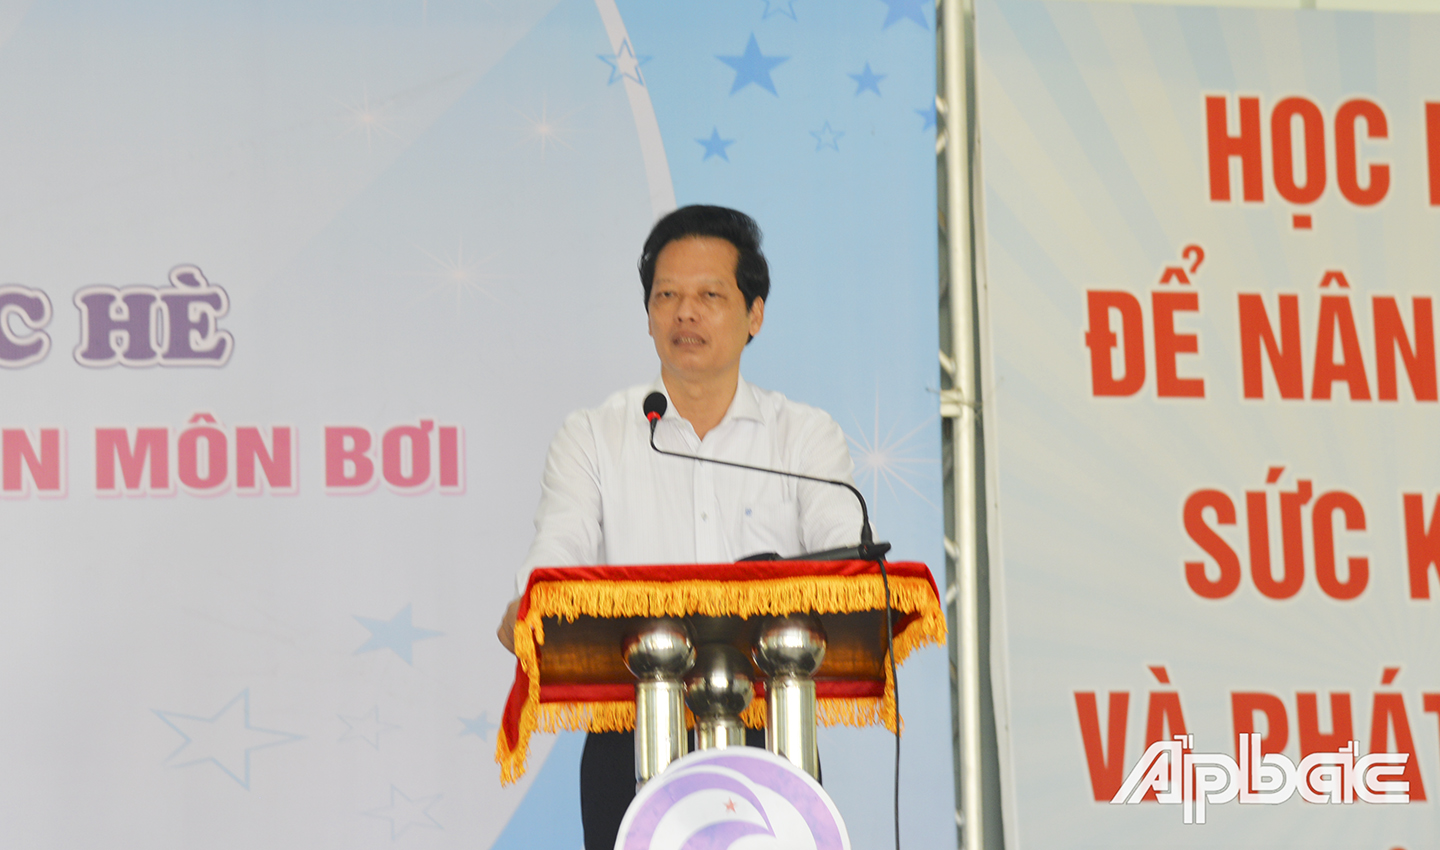 Đồng chí Nguyễn Thành Diệu, Tỉnh ủy viên, Phó Chủ tịch UBND tỉnh, Chủ tịch Hội đồng bảo vệ, chăm sóc trẻ em tỉnh Tiền Giang phát biểu chỉ đạo.